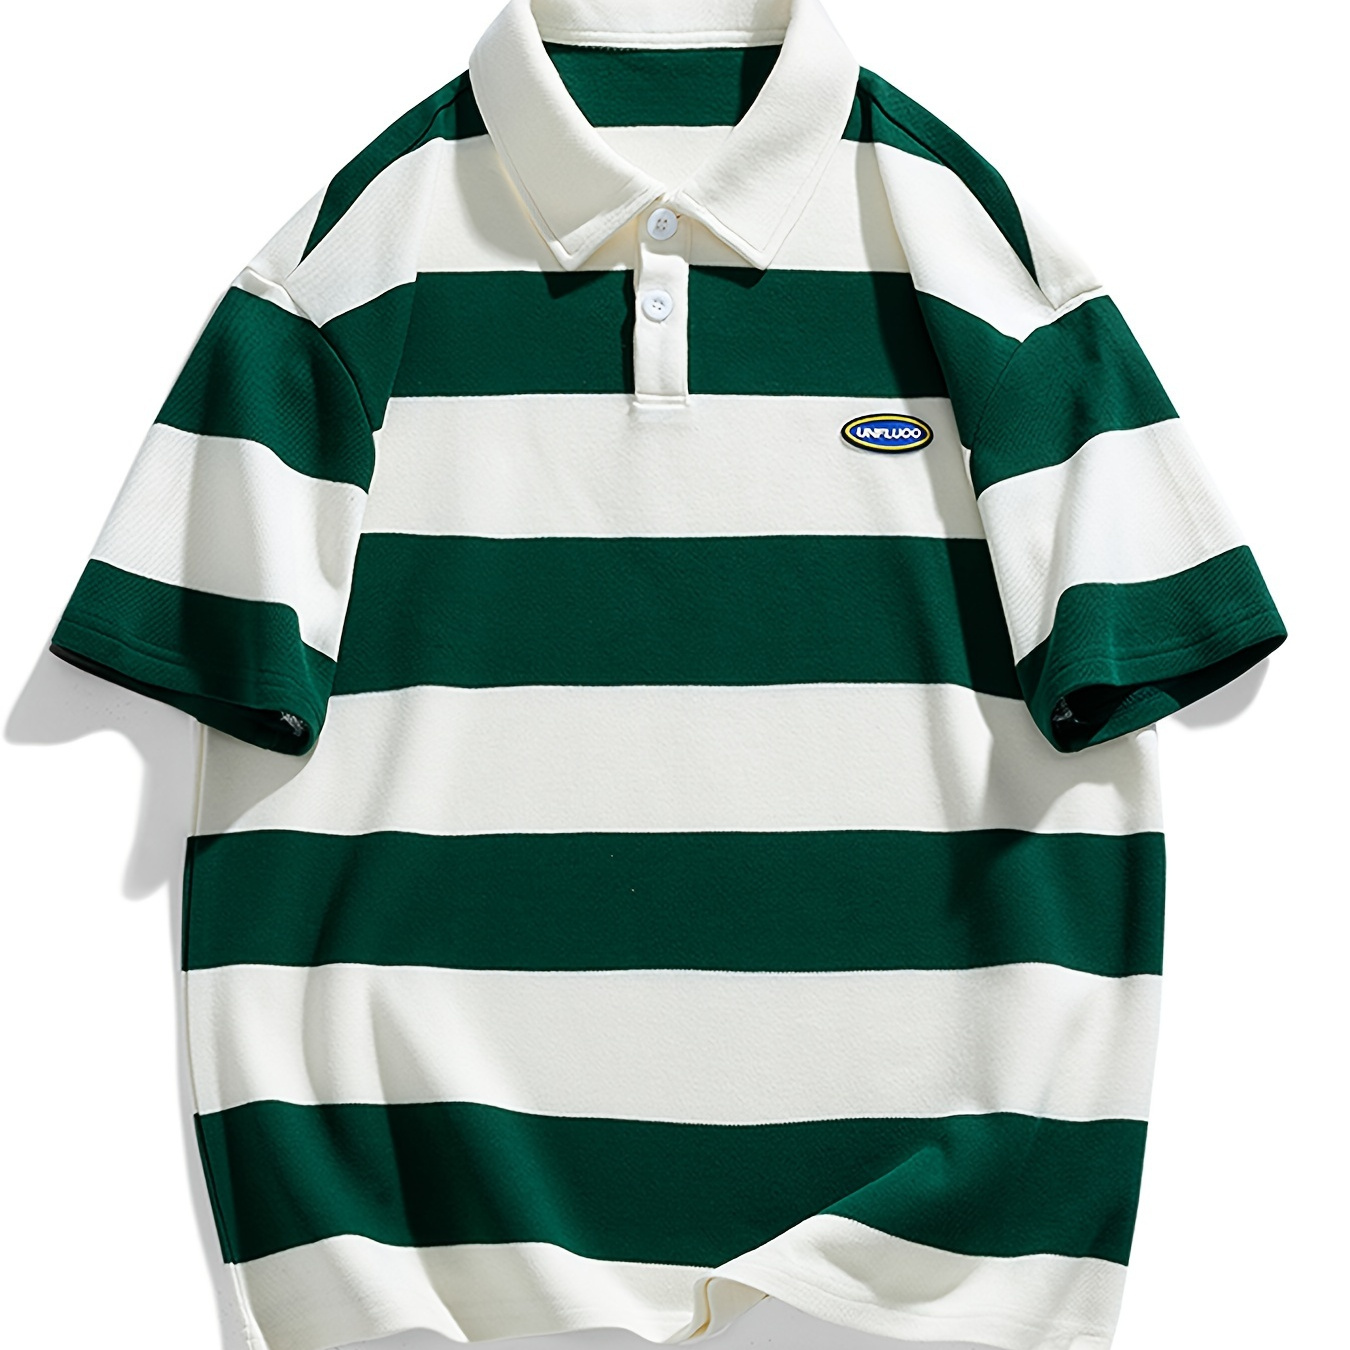 

Men's Striped Golf Shirt, Casual Short Sleeve Cotton Blend Lapel Shirt For Outdoor